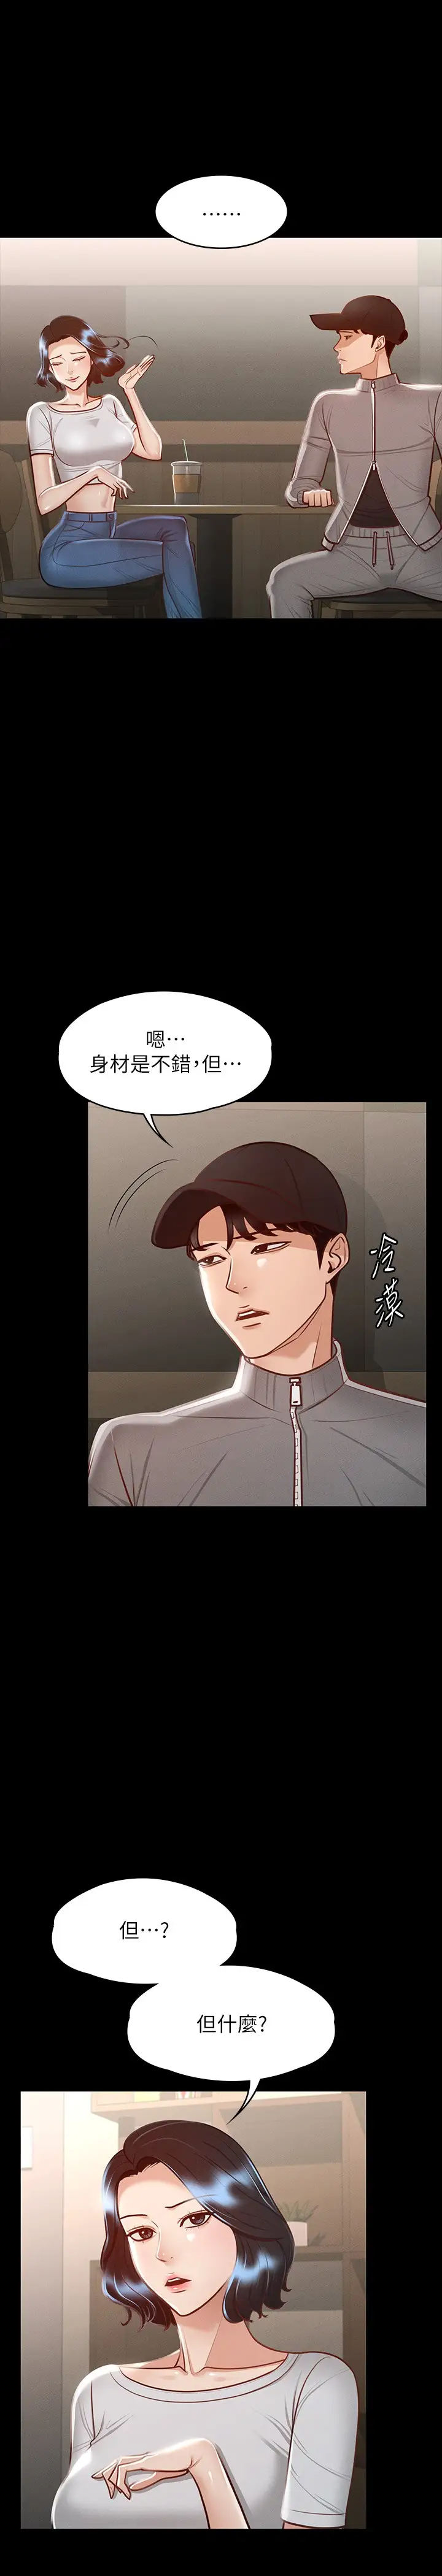 韩国污漫画 超級公務員 第24话 芮雪的完美身材 11